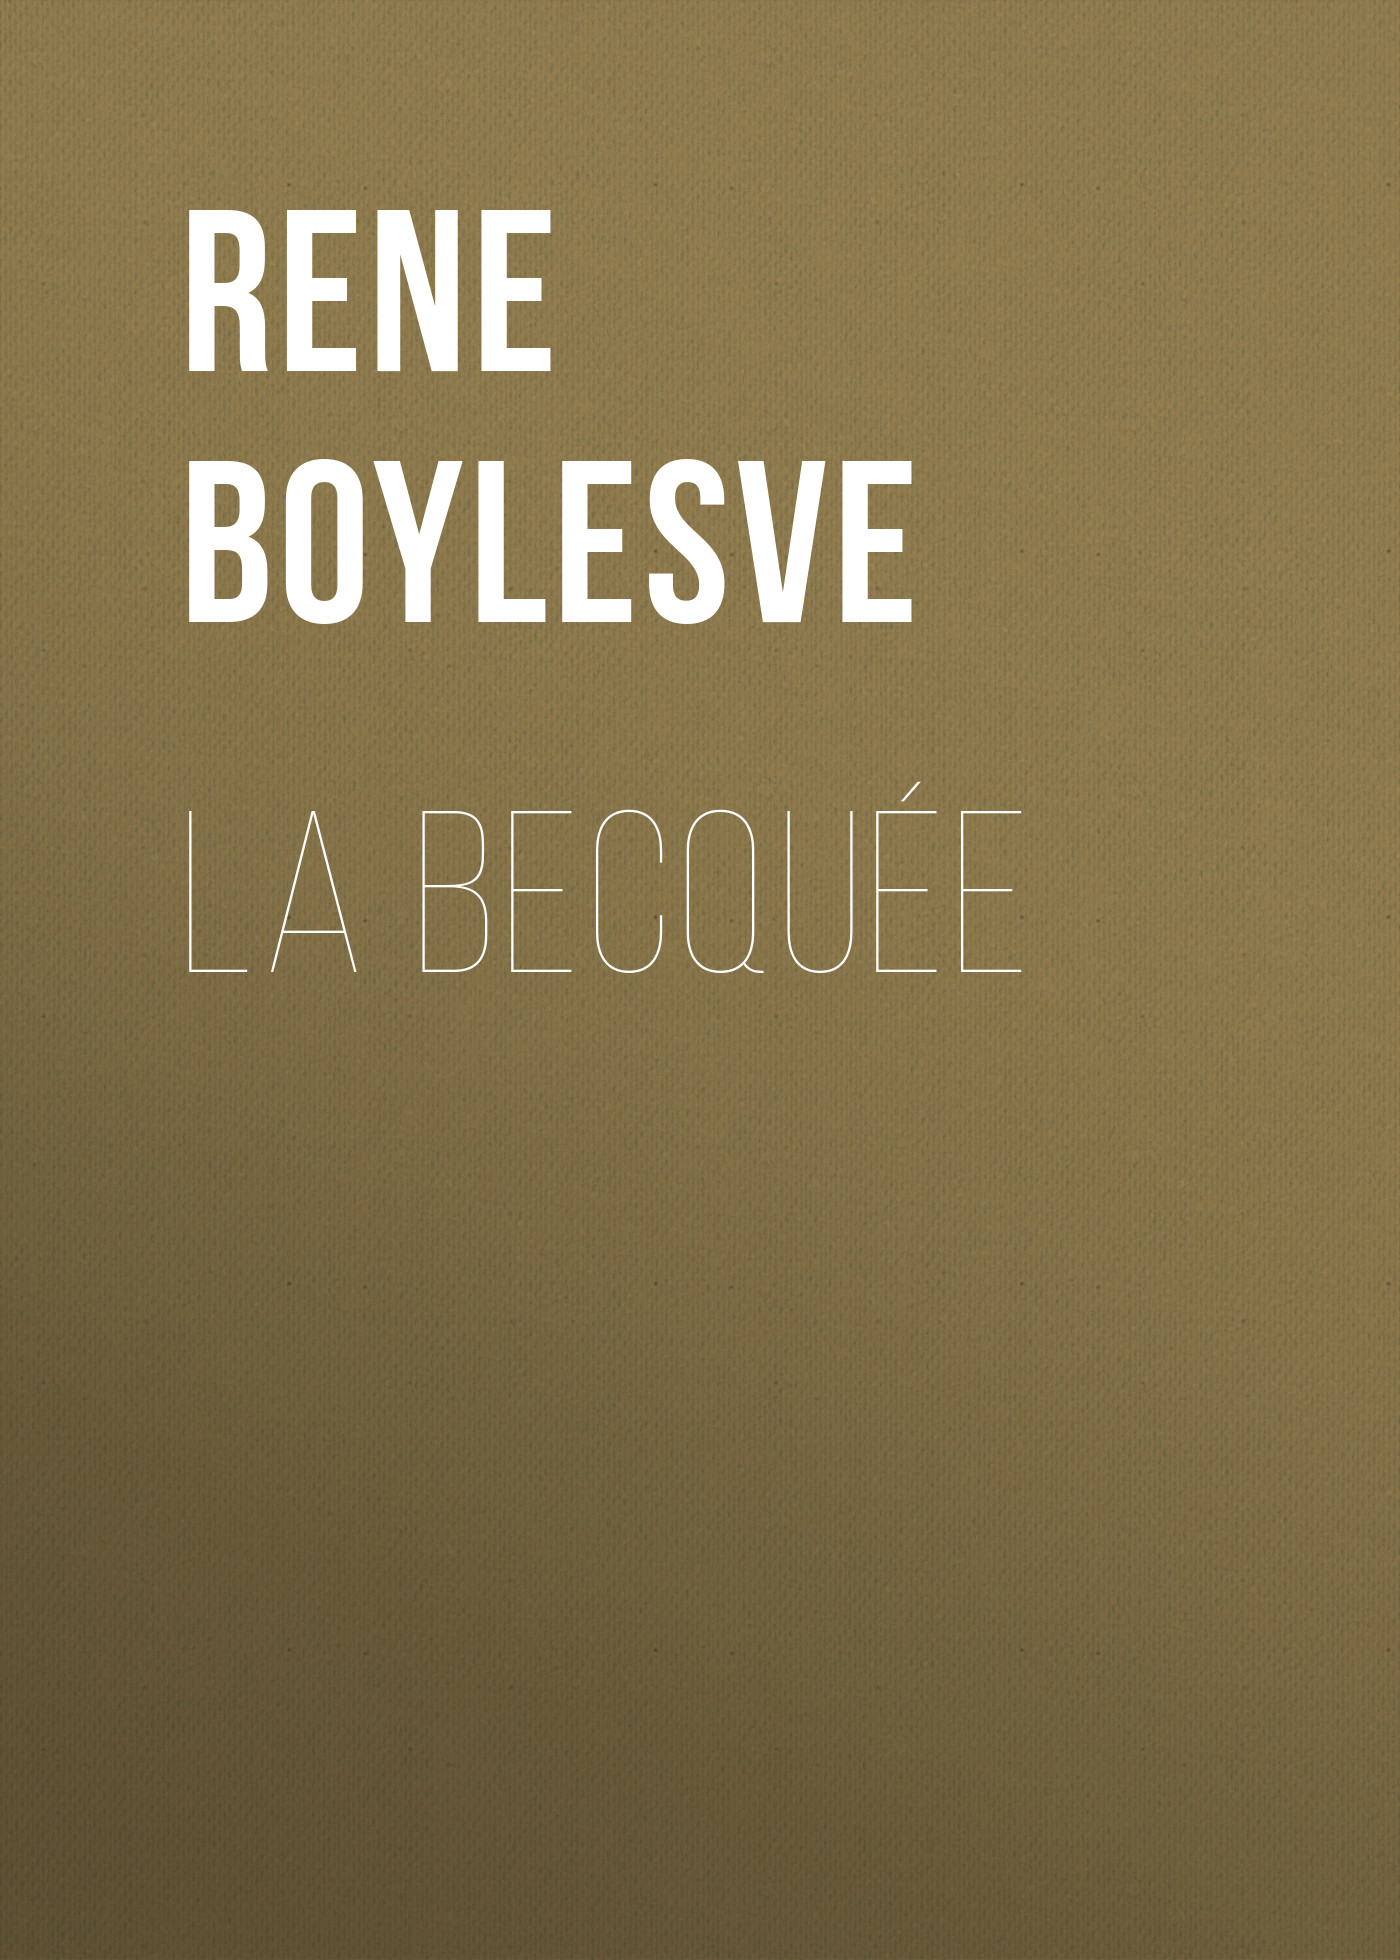 Книга La Becquée из серии , созданная René Boylesve, может относится к жанру Зарубежная старинная литература, Зарубежная классика. Стоимость электронной книги La Becquée с идентификатором 24179596 составляет 0 руб.